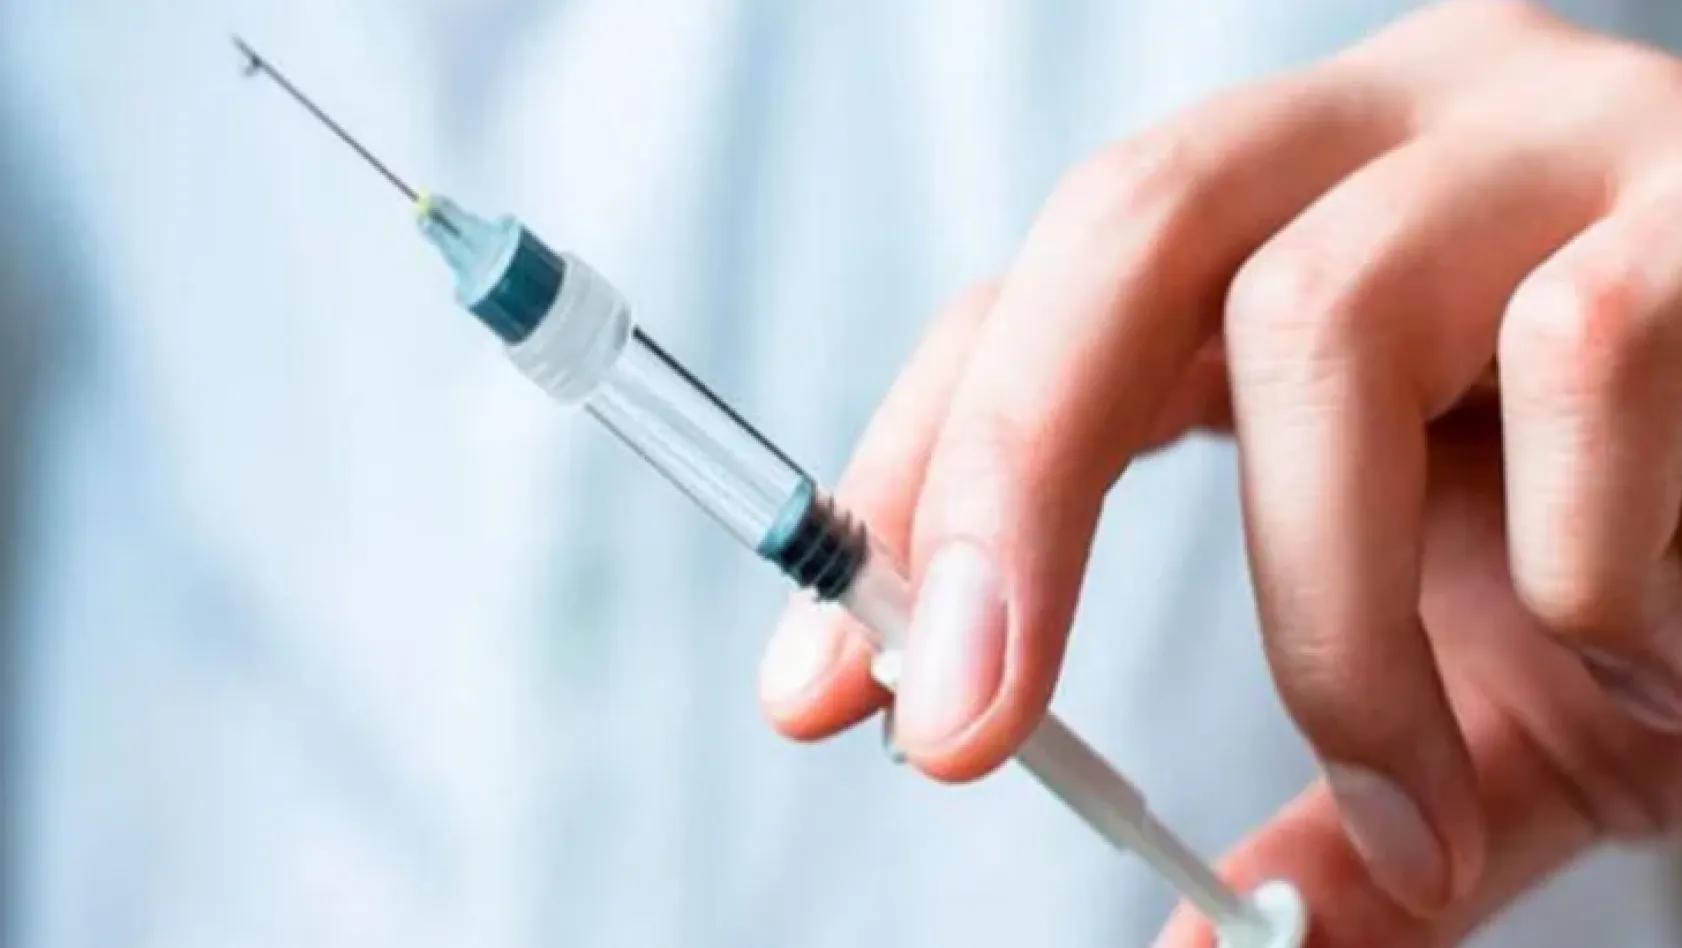 Çin aşısı güvenli mi? Merak edilen 5 soruya dikkat çeken yanıt